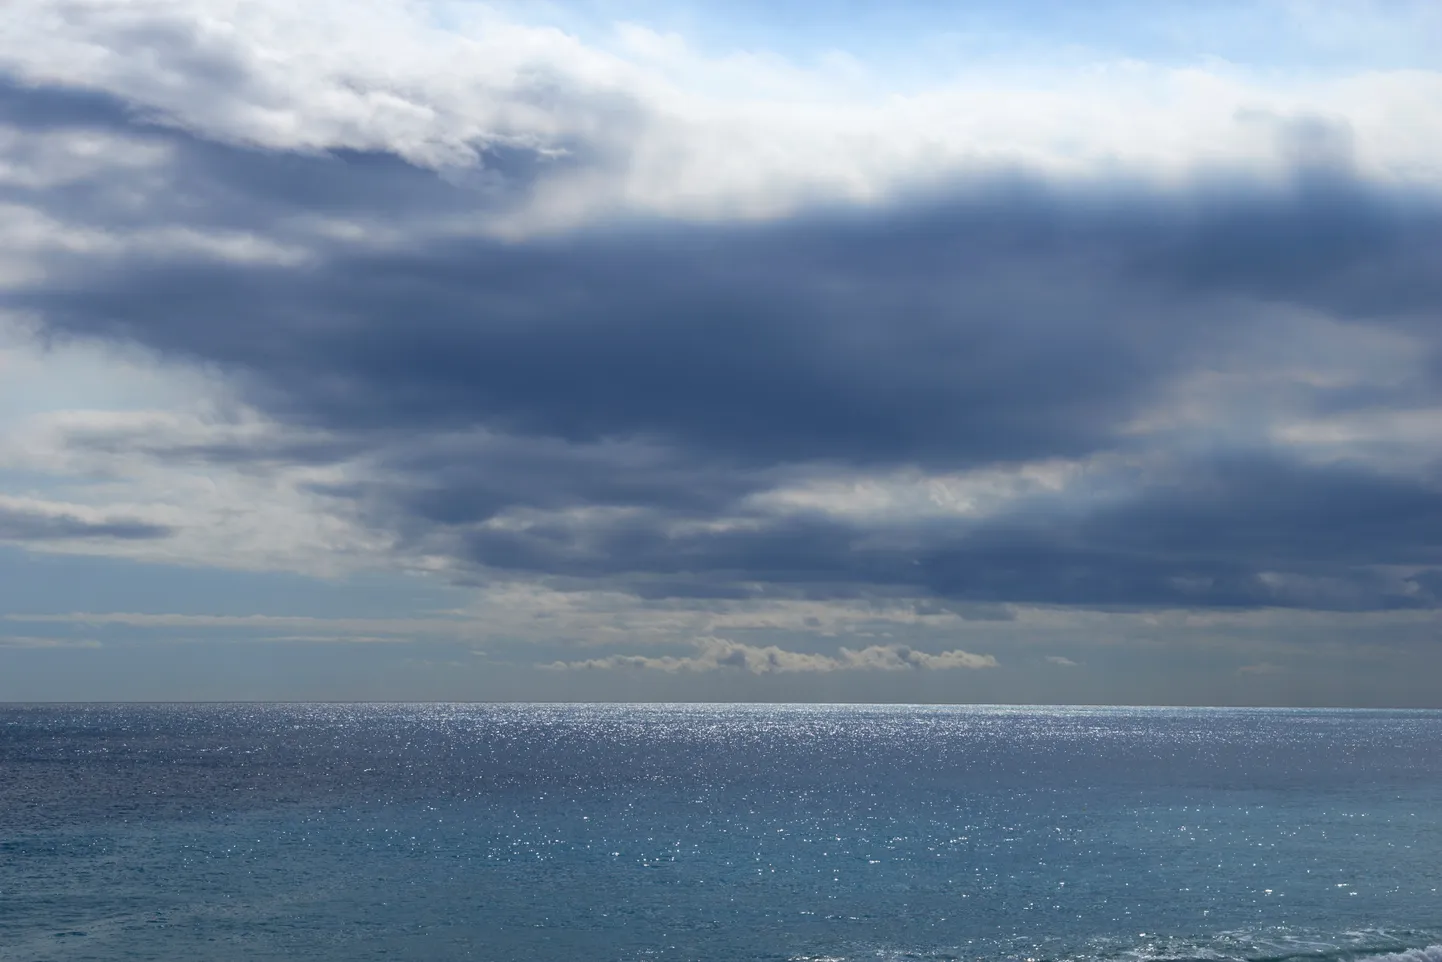 Море и облака